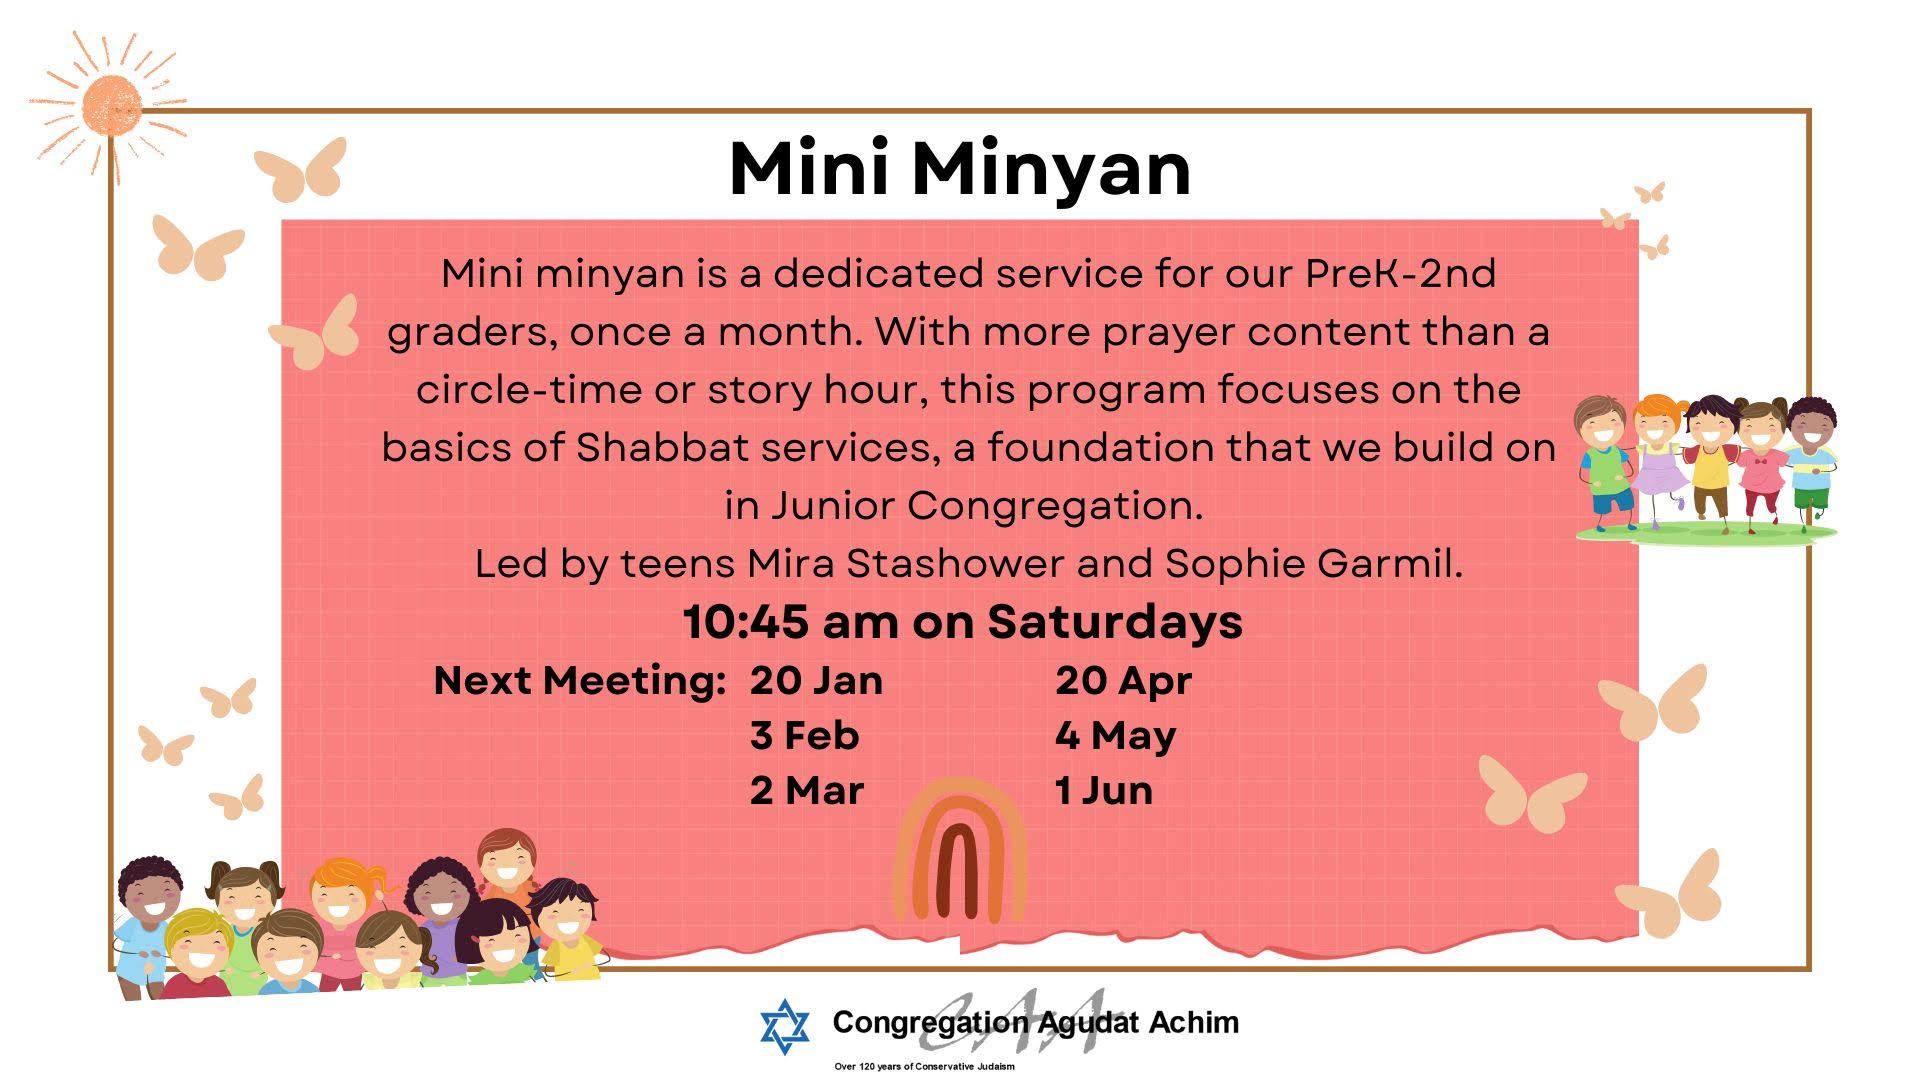 Mini Minyan